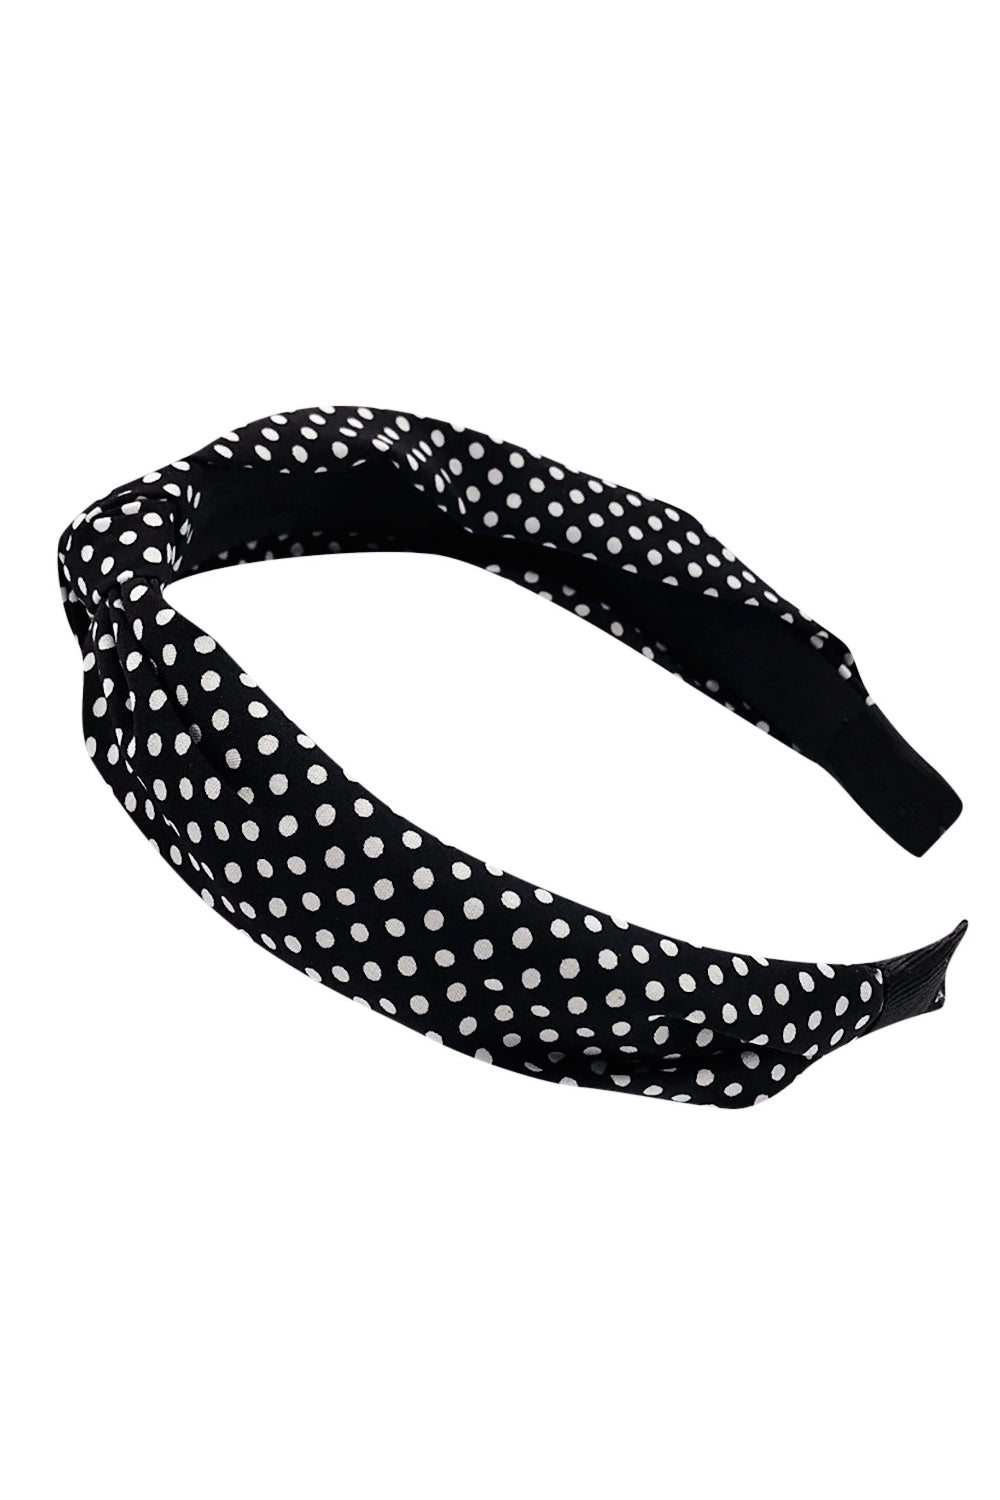 Black Polka Dot Twist Headband